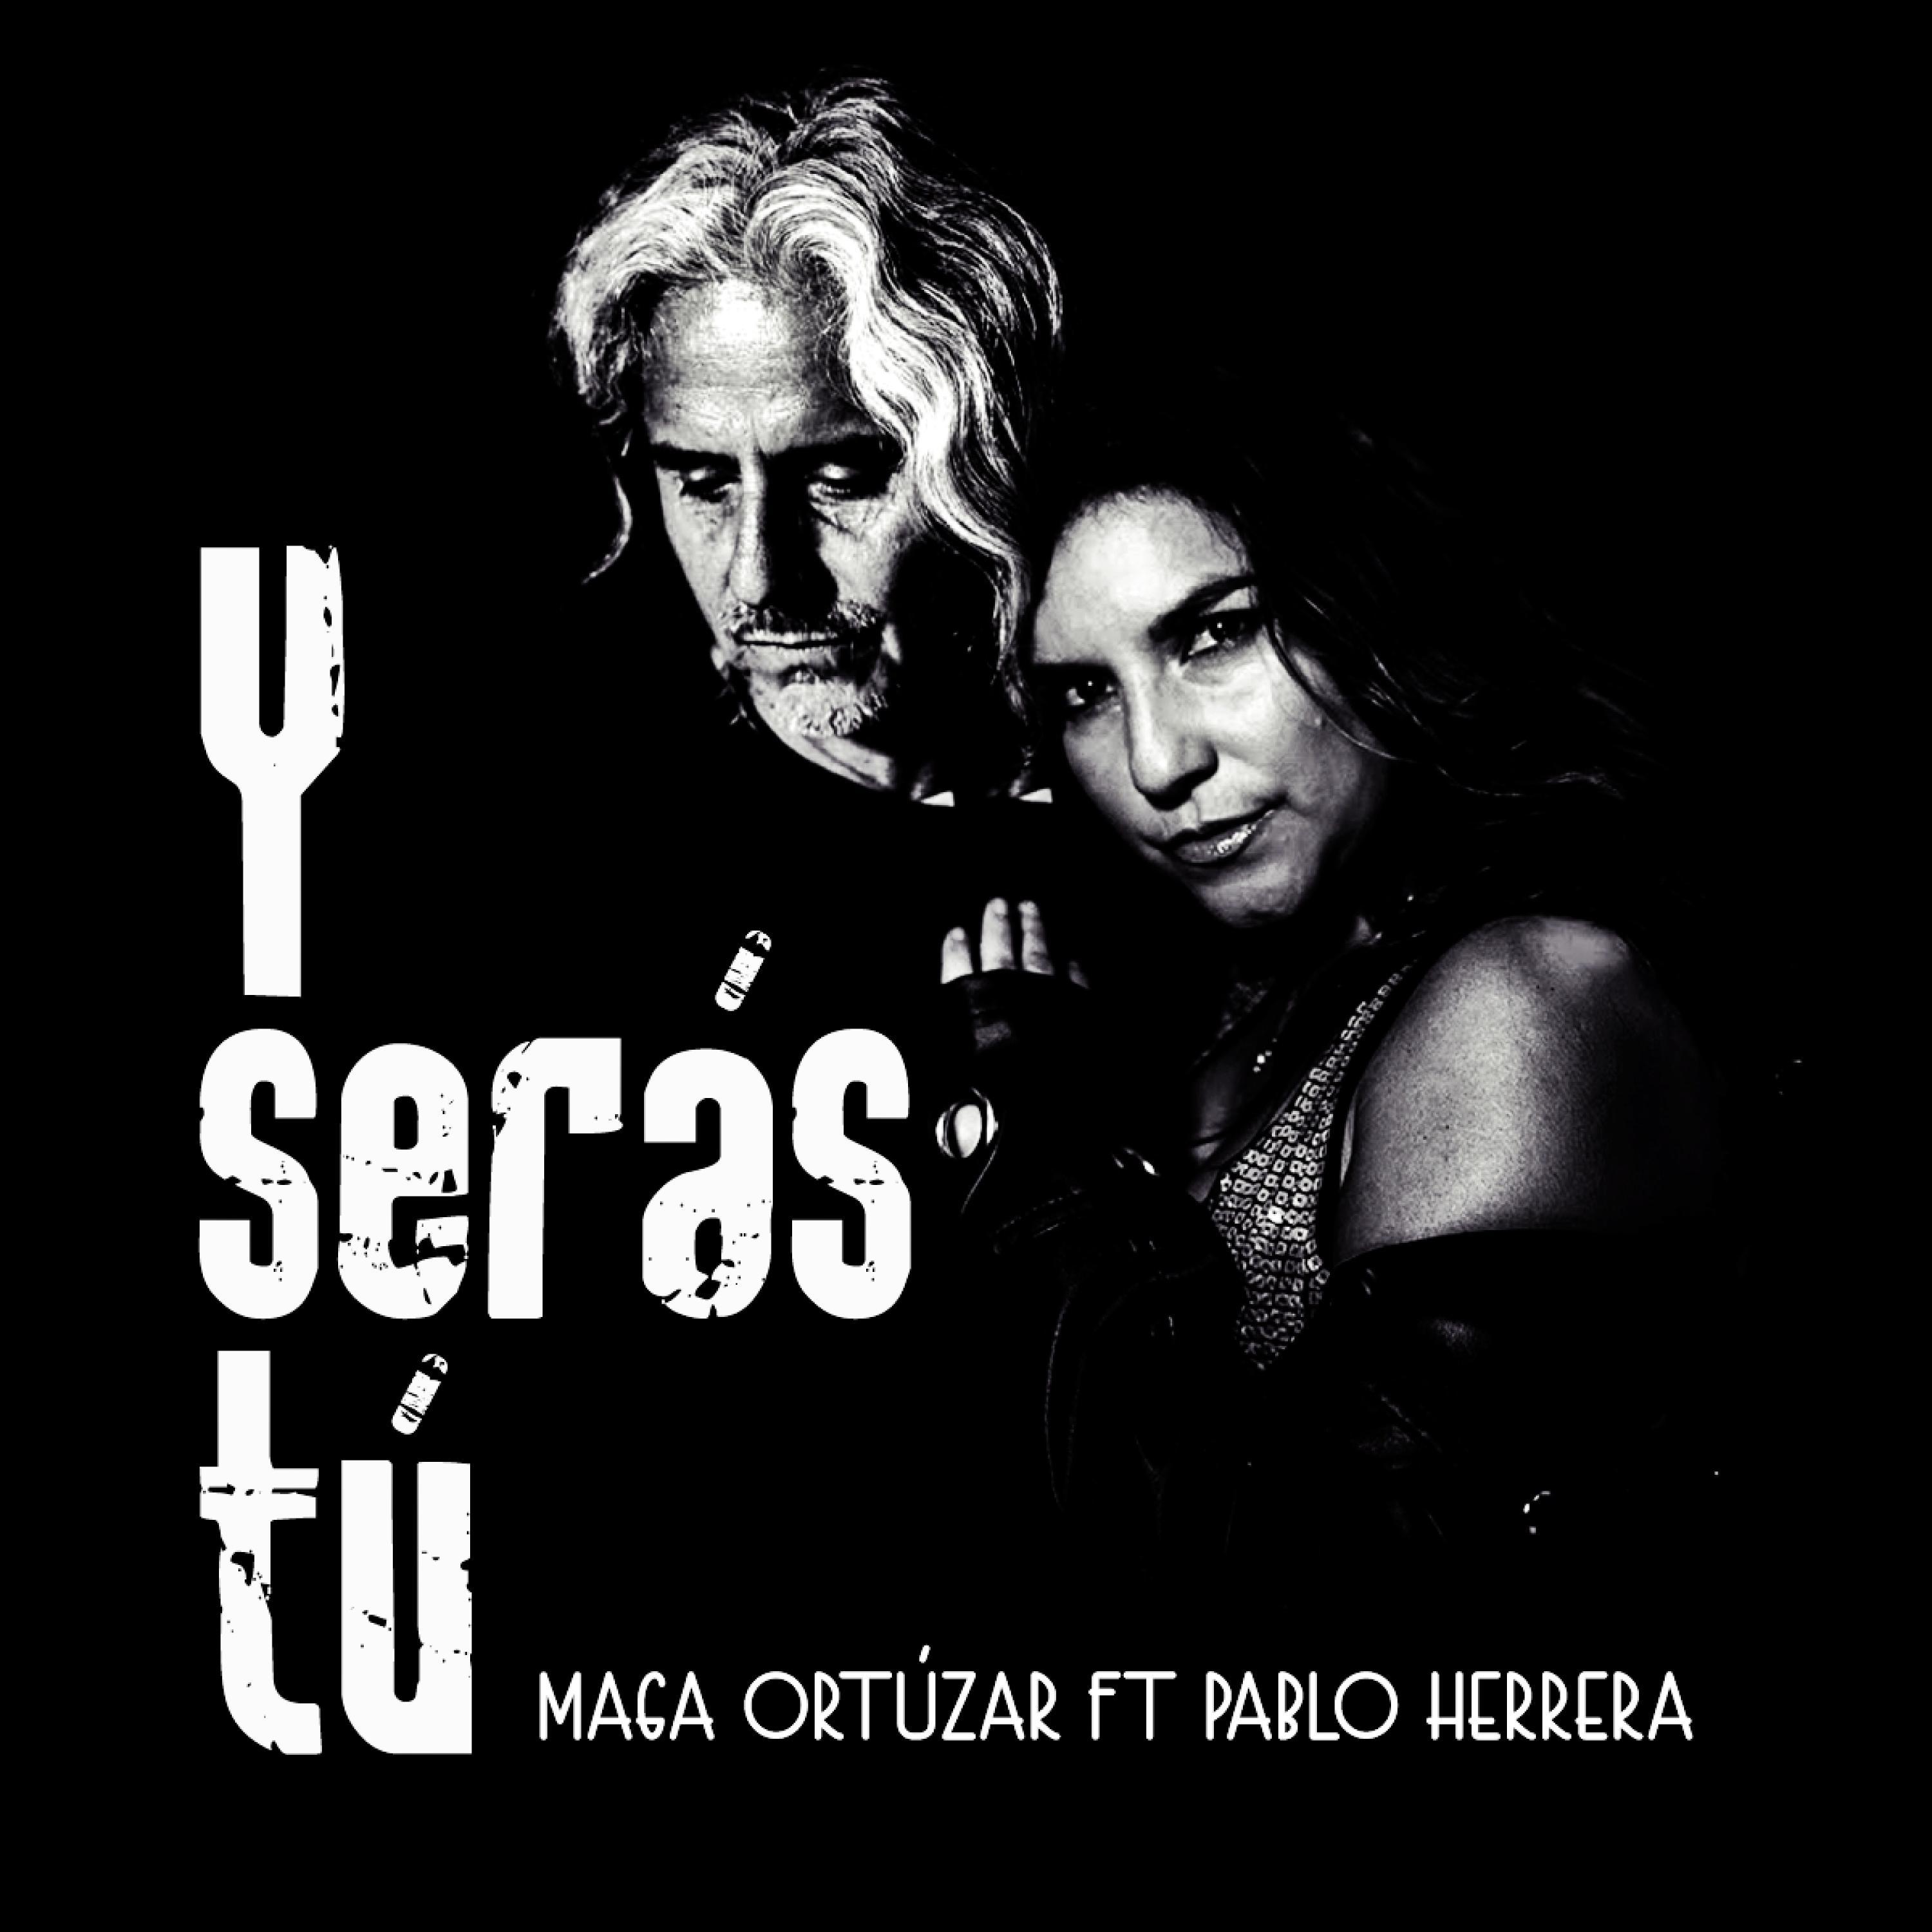 Maga Ortúzar - Y serás tú (feat. Pablo Herrera)